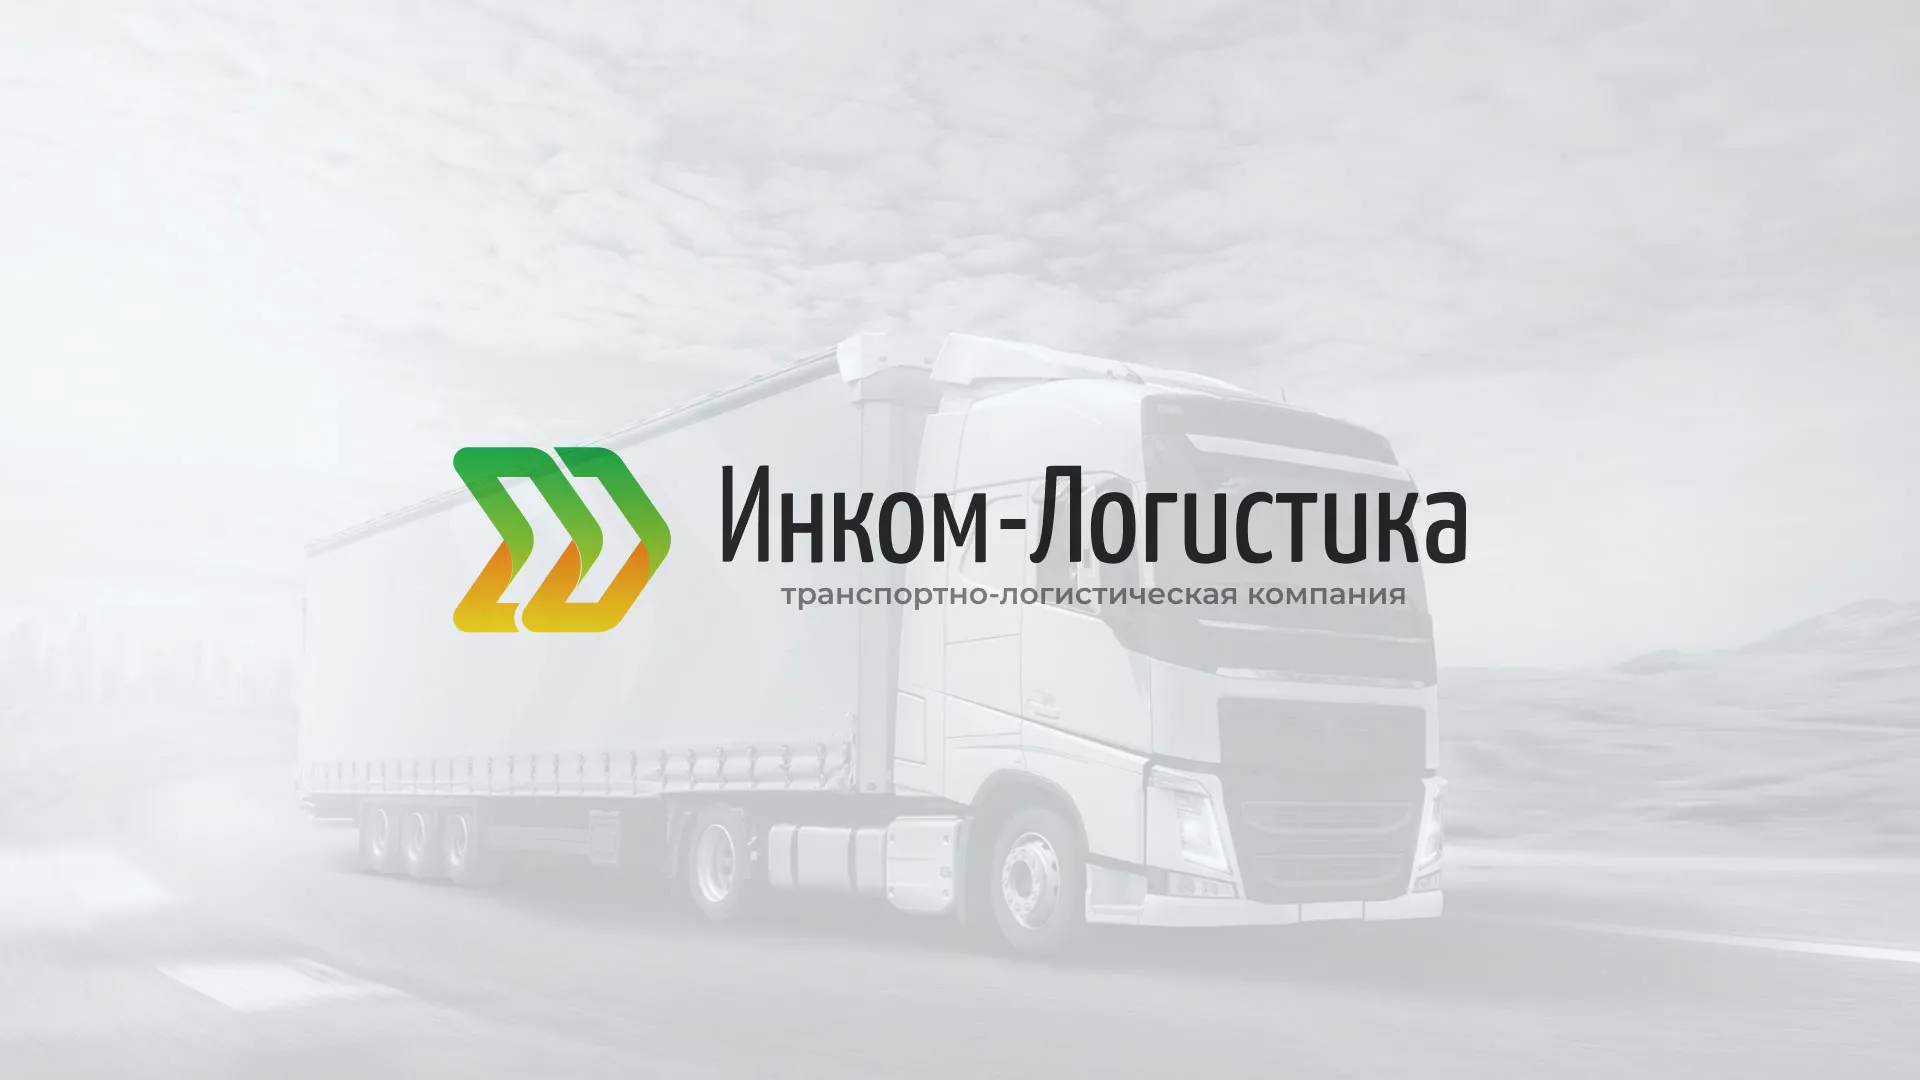 Разработка логотипа и сайта компании «Инком-Логистика» в Усть-Илимске